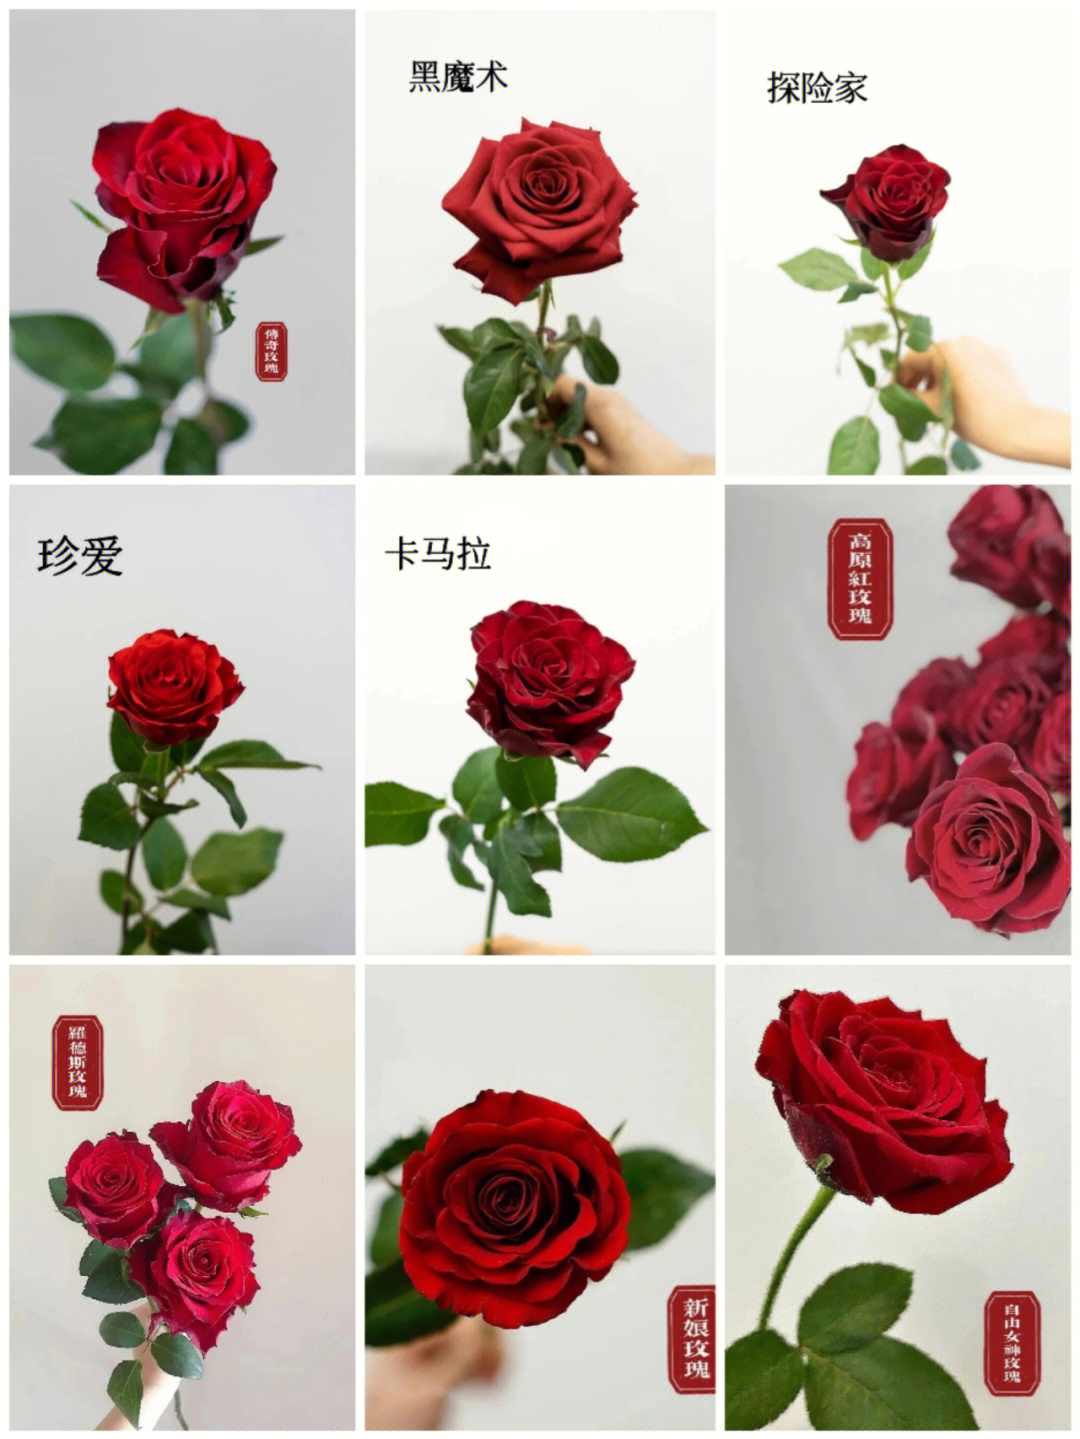 节日推荐红玫瑰品种